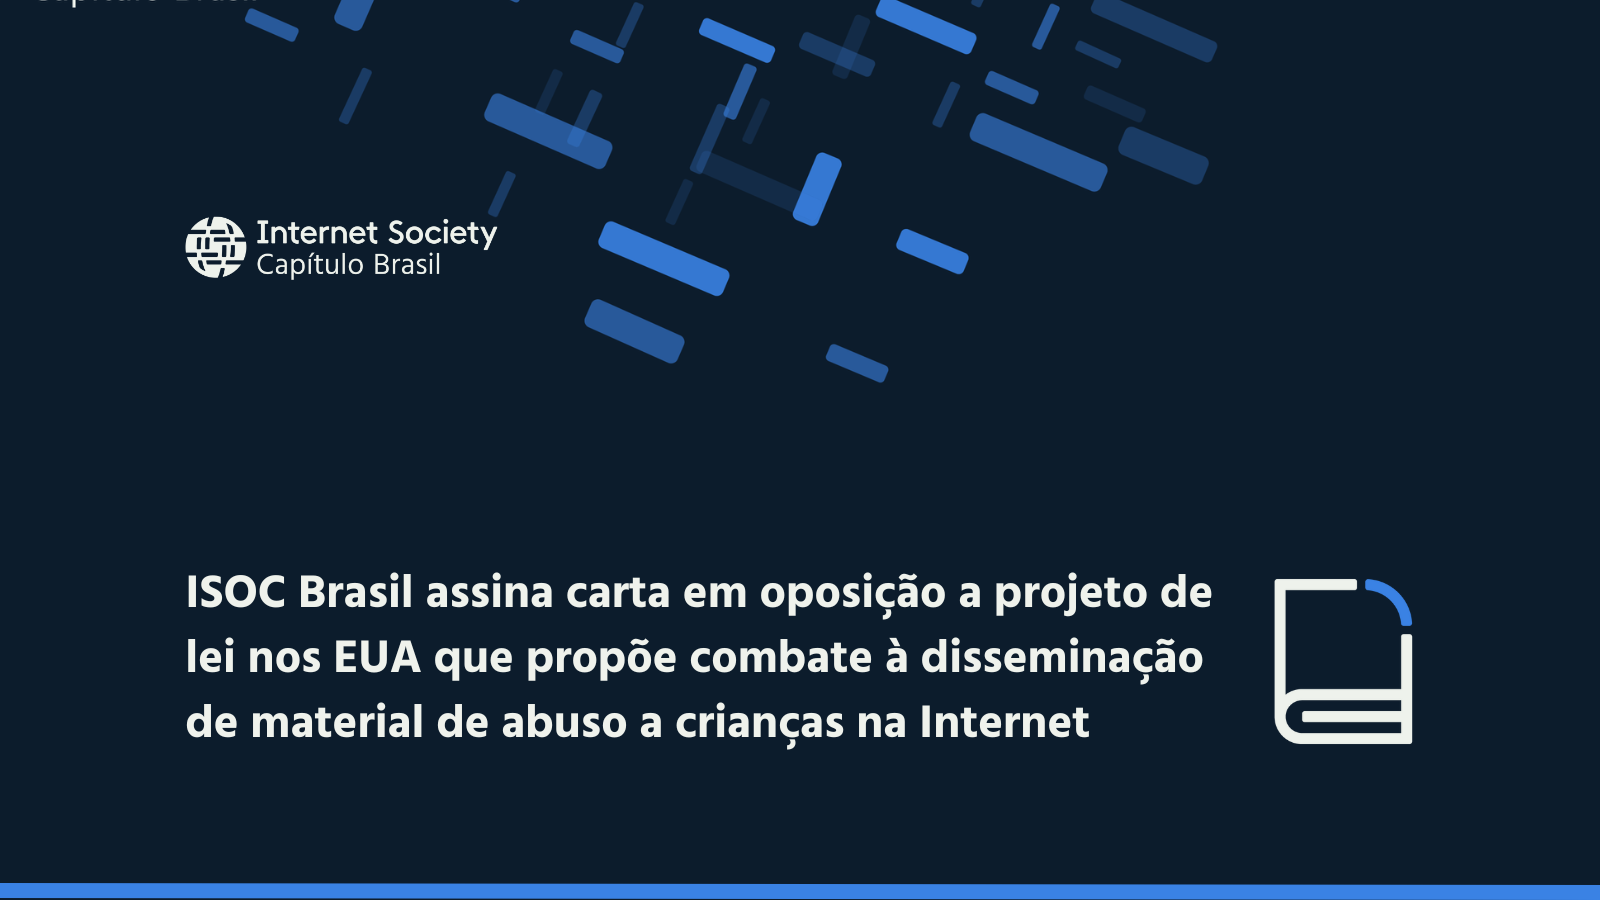 ISOC Brasil assina carta em oposição a projeto de lei nos EUA que propõe combate à disseminação de material de abuso a crianças na Internet.